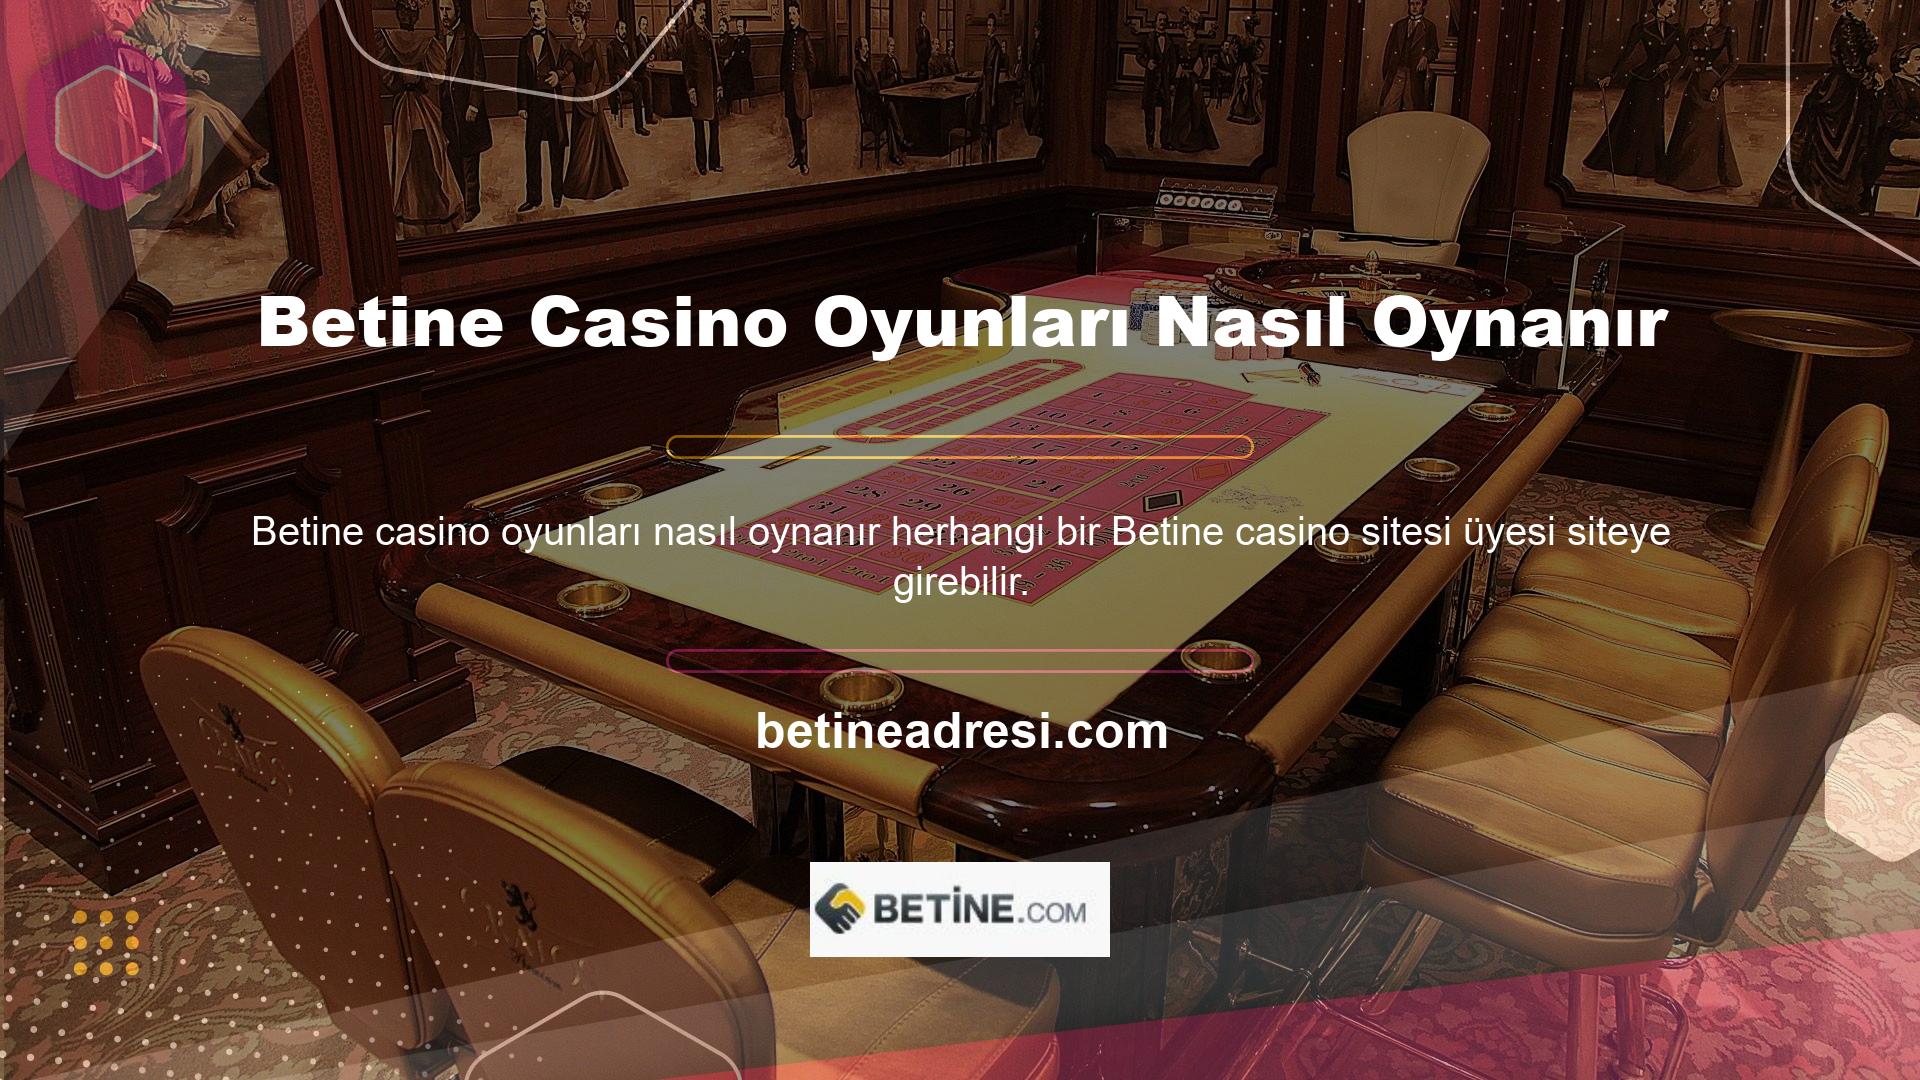 Bir kullanıcı web sitesine girdiğinde web sitesinin sağ tarafında casino bölümünü göreceklerdir